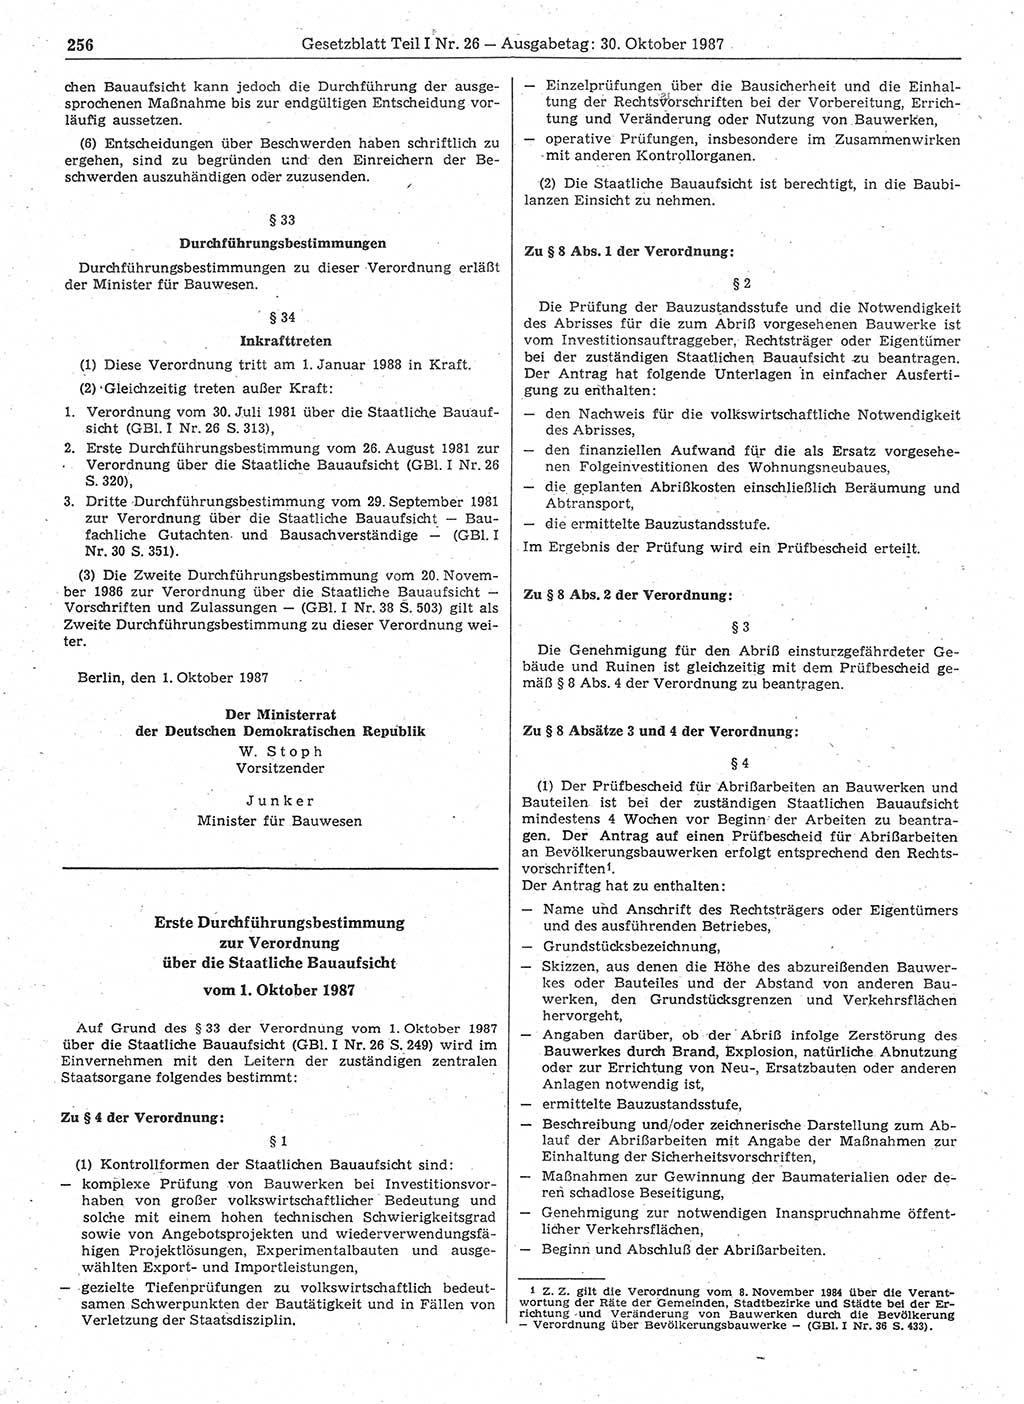 Gesetzblatt (GBl.) der Deutschen Demokratischen Republik (DDR) Teil Ⅰ 1987, Seite 256 (GBl. DDR Ⅰ 1987, S. 256)